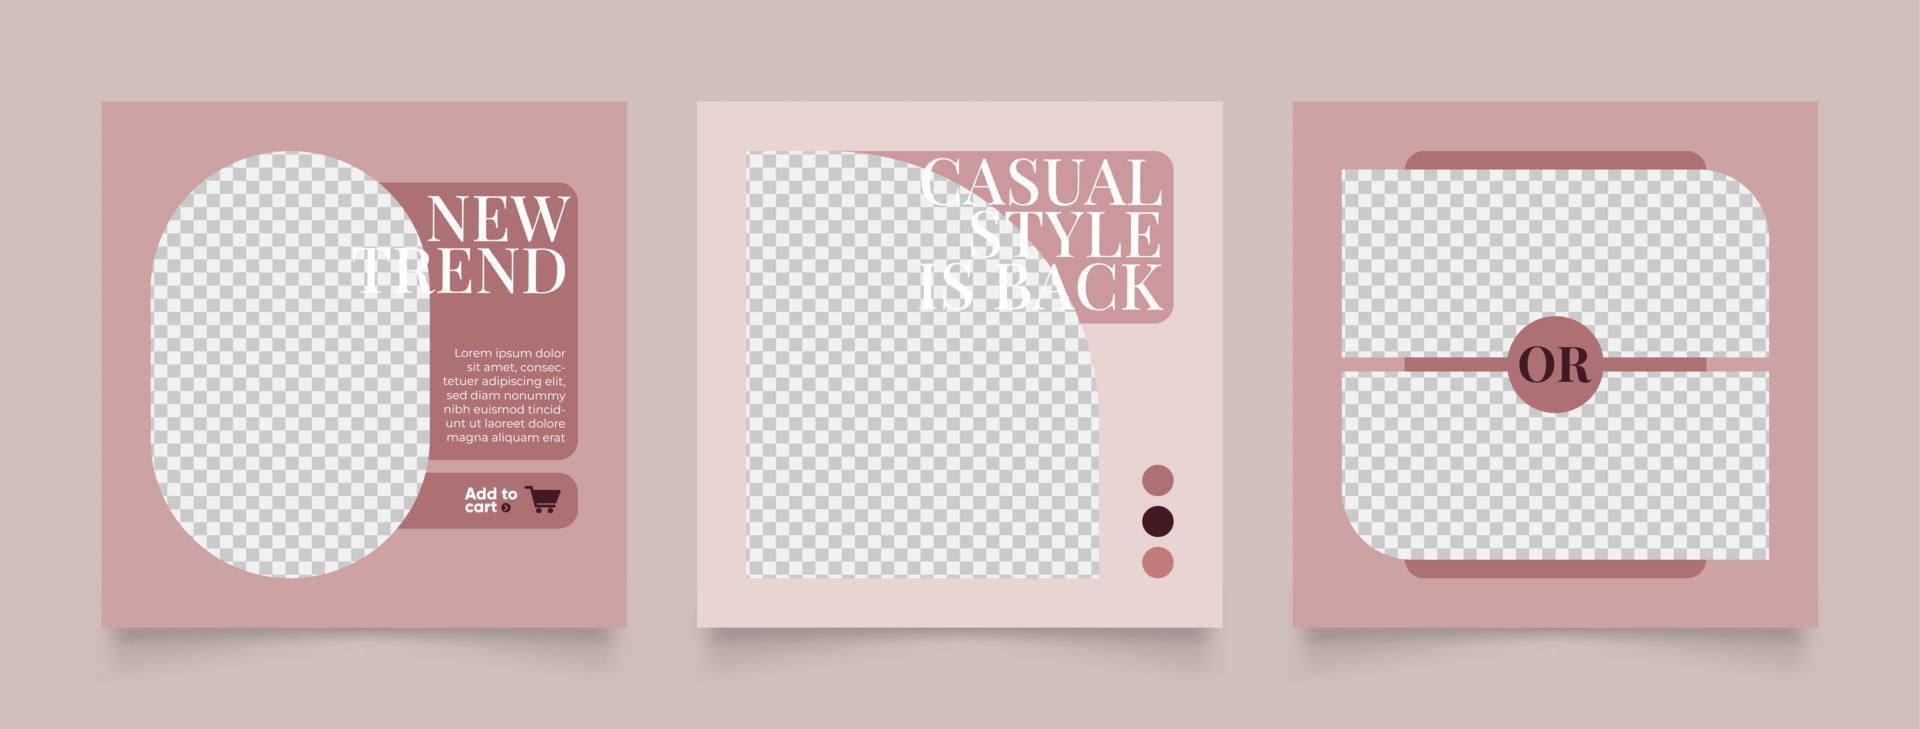 social media template banner modeverkaufsförderung in rotbrauner farbe vektor